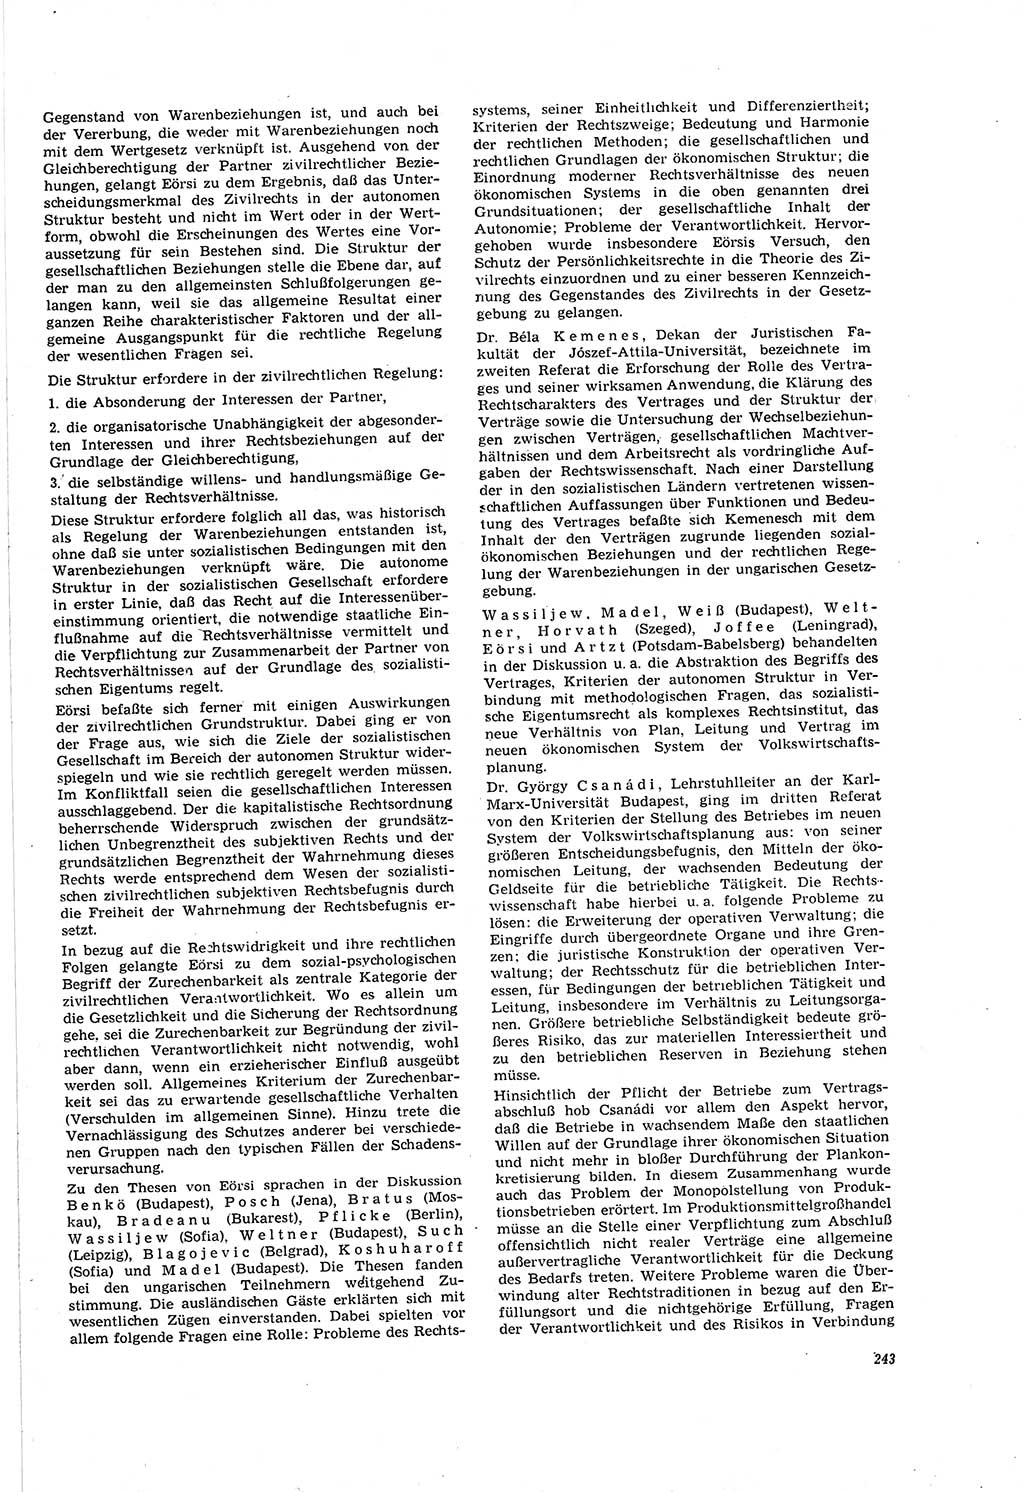 Neue Justiz (NJ), Zeitschrift für Recht und Rechtswissenschaft [Deutsche Demokratische Republik (DDR)], 20. Jahrgang 1966, Seite 243 (NJ DDR 1966, S. 243)